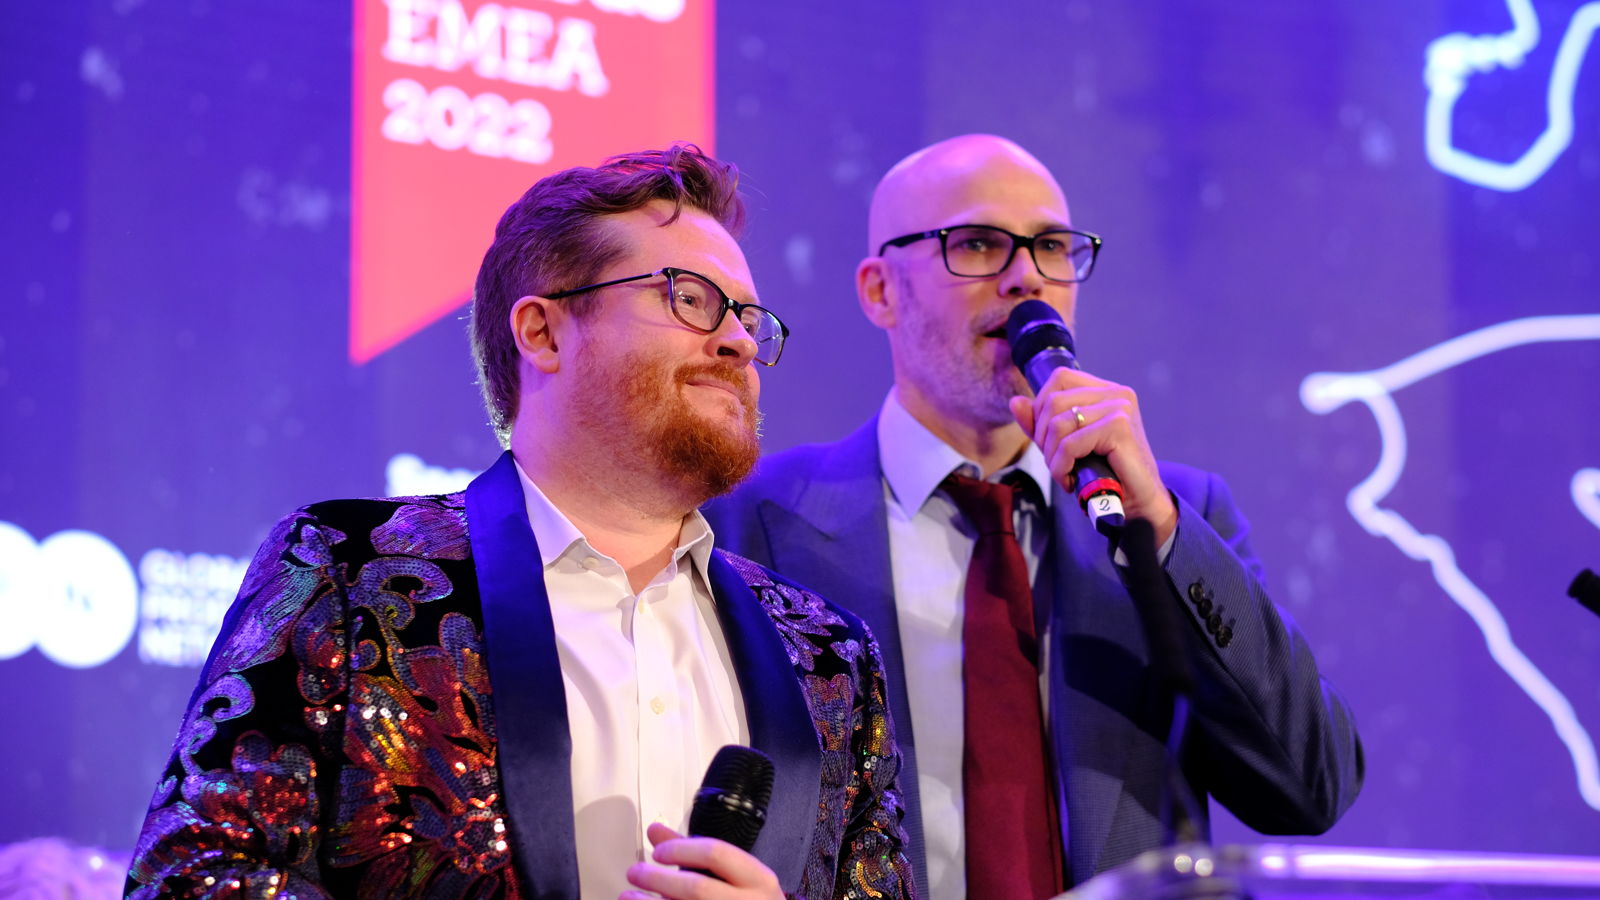 EMEA Awards 2022